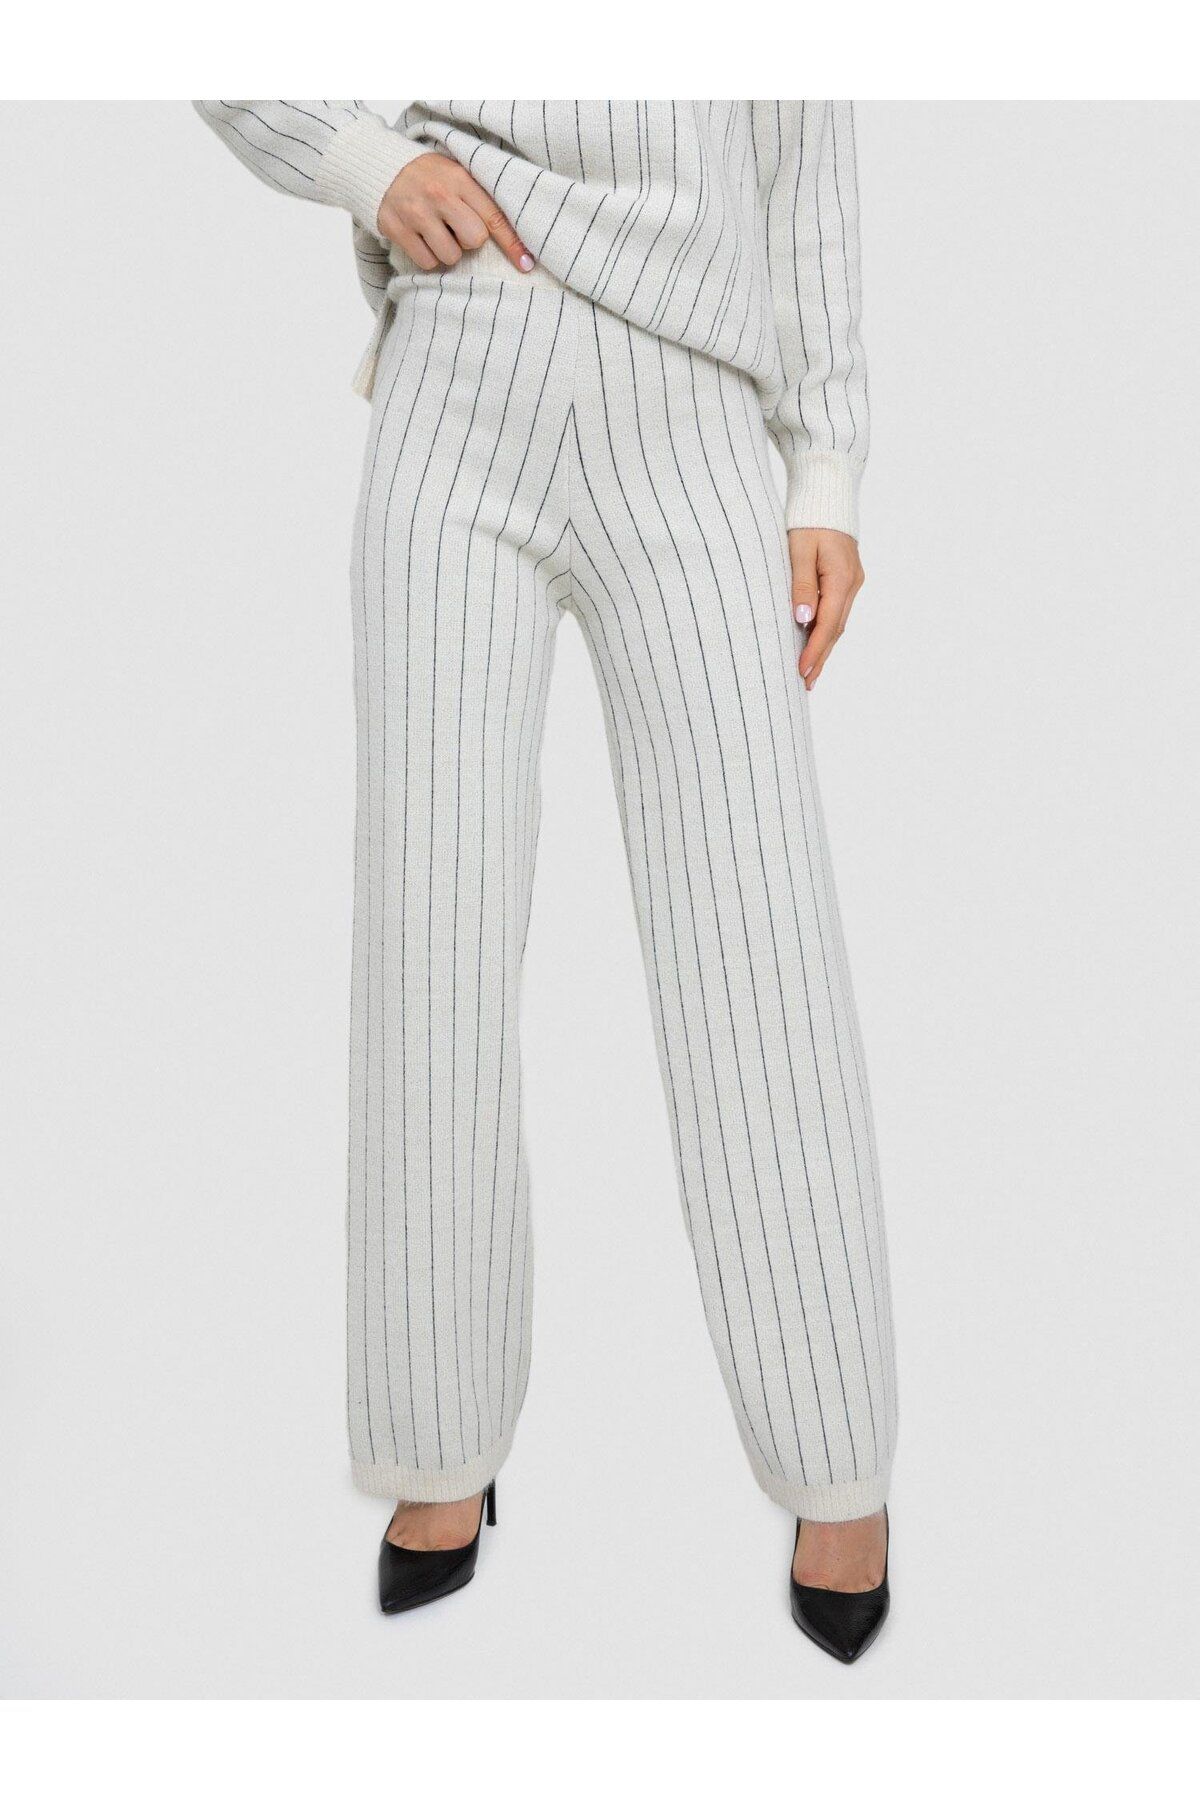 Serianno Yün karışımlı Zıt Renk Şeritli Pantolon